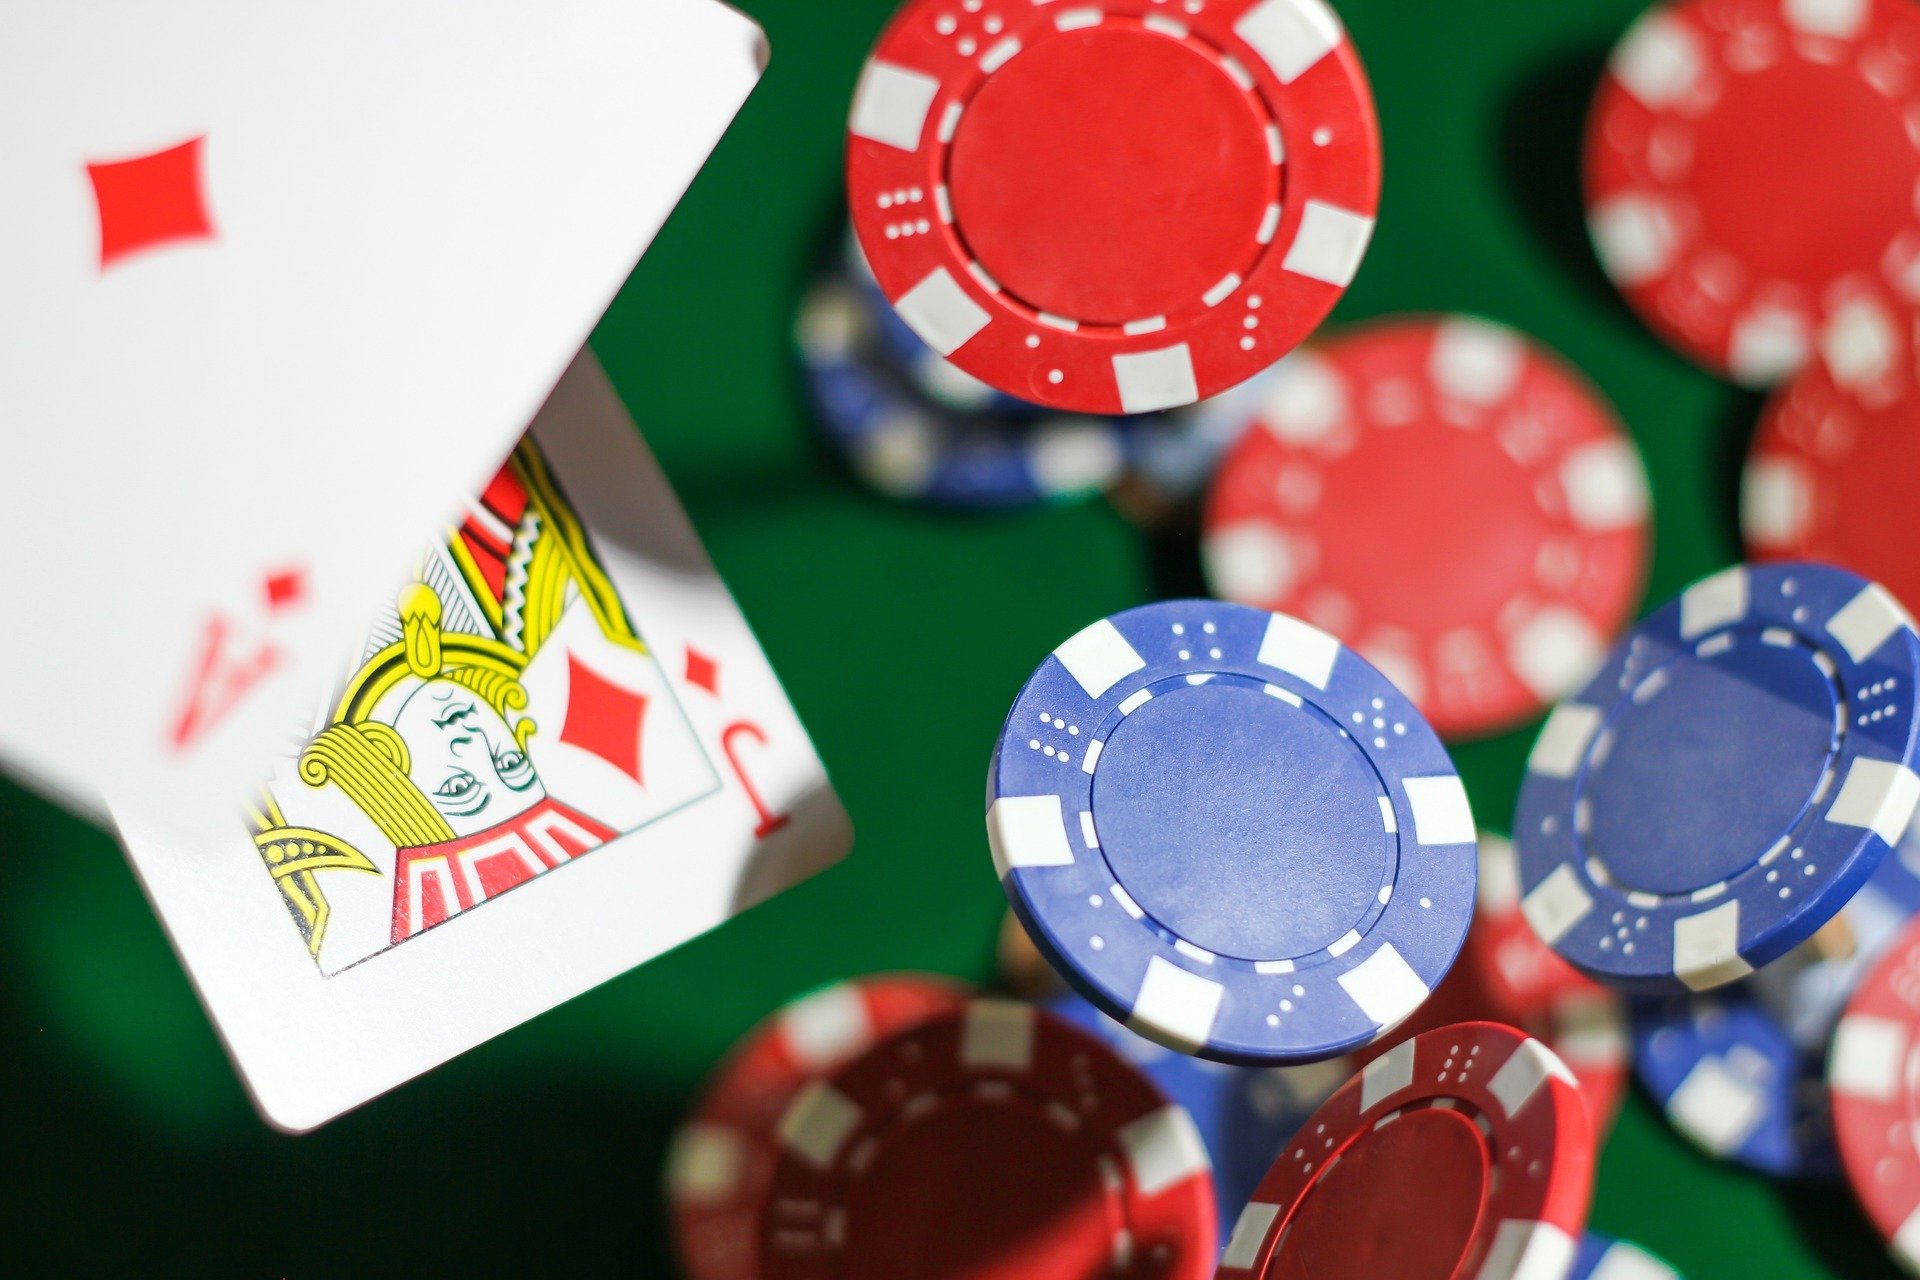 Apostar dinheiro real no blackjack pode ser a melhor opção para encontrar mais diversão durante os jogos. Veja algumas opções para jogar.